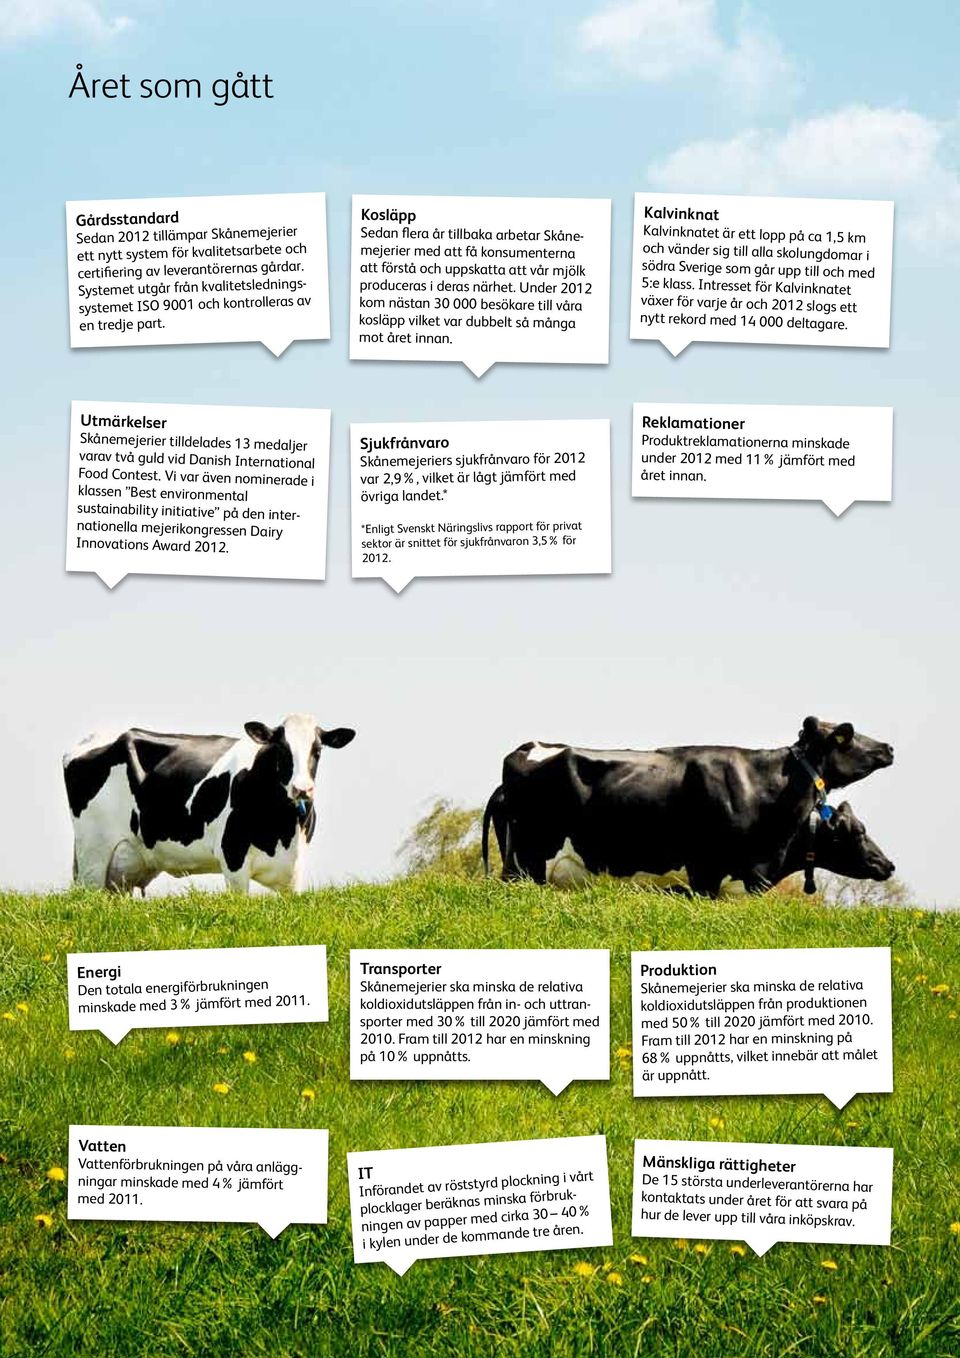 Kosläpp Sedan flera år tillbaka arbetar Skånemejerier med att få konsumenterna att förstå och uppskatta att vår mjölk produceras i deras närhet.